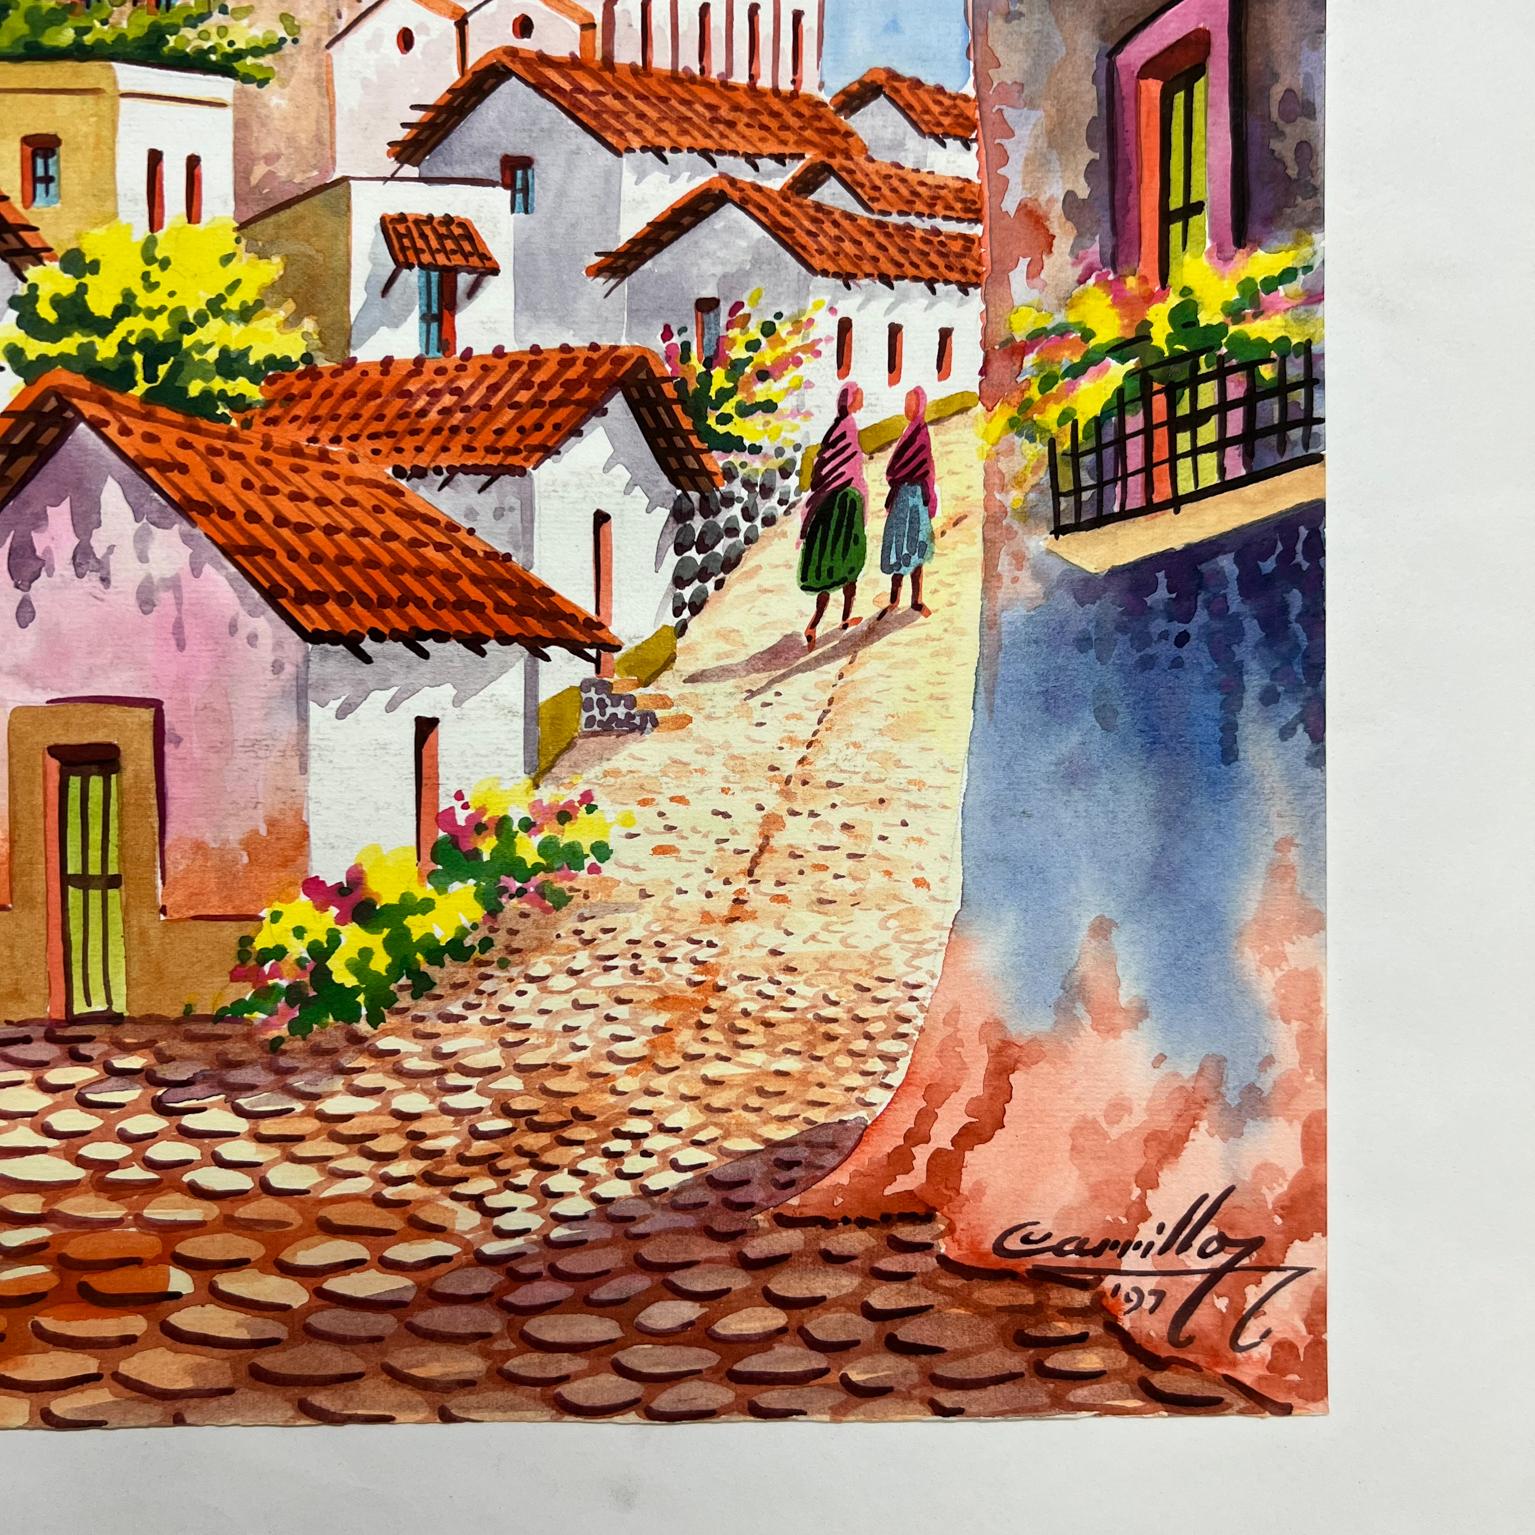 1997 Vintage Art Original Watercolor Cobblestone Village #1 by Carrillo In Good Condition For Sale In Chula Vista, CA